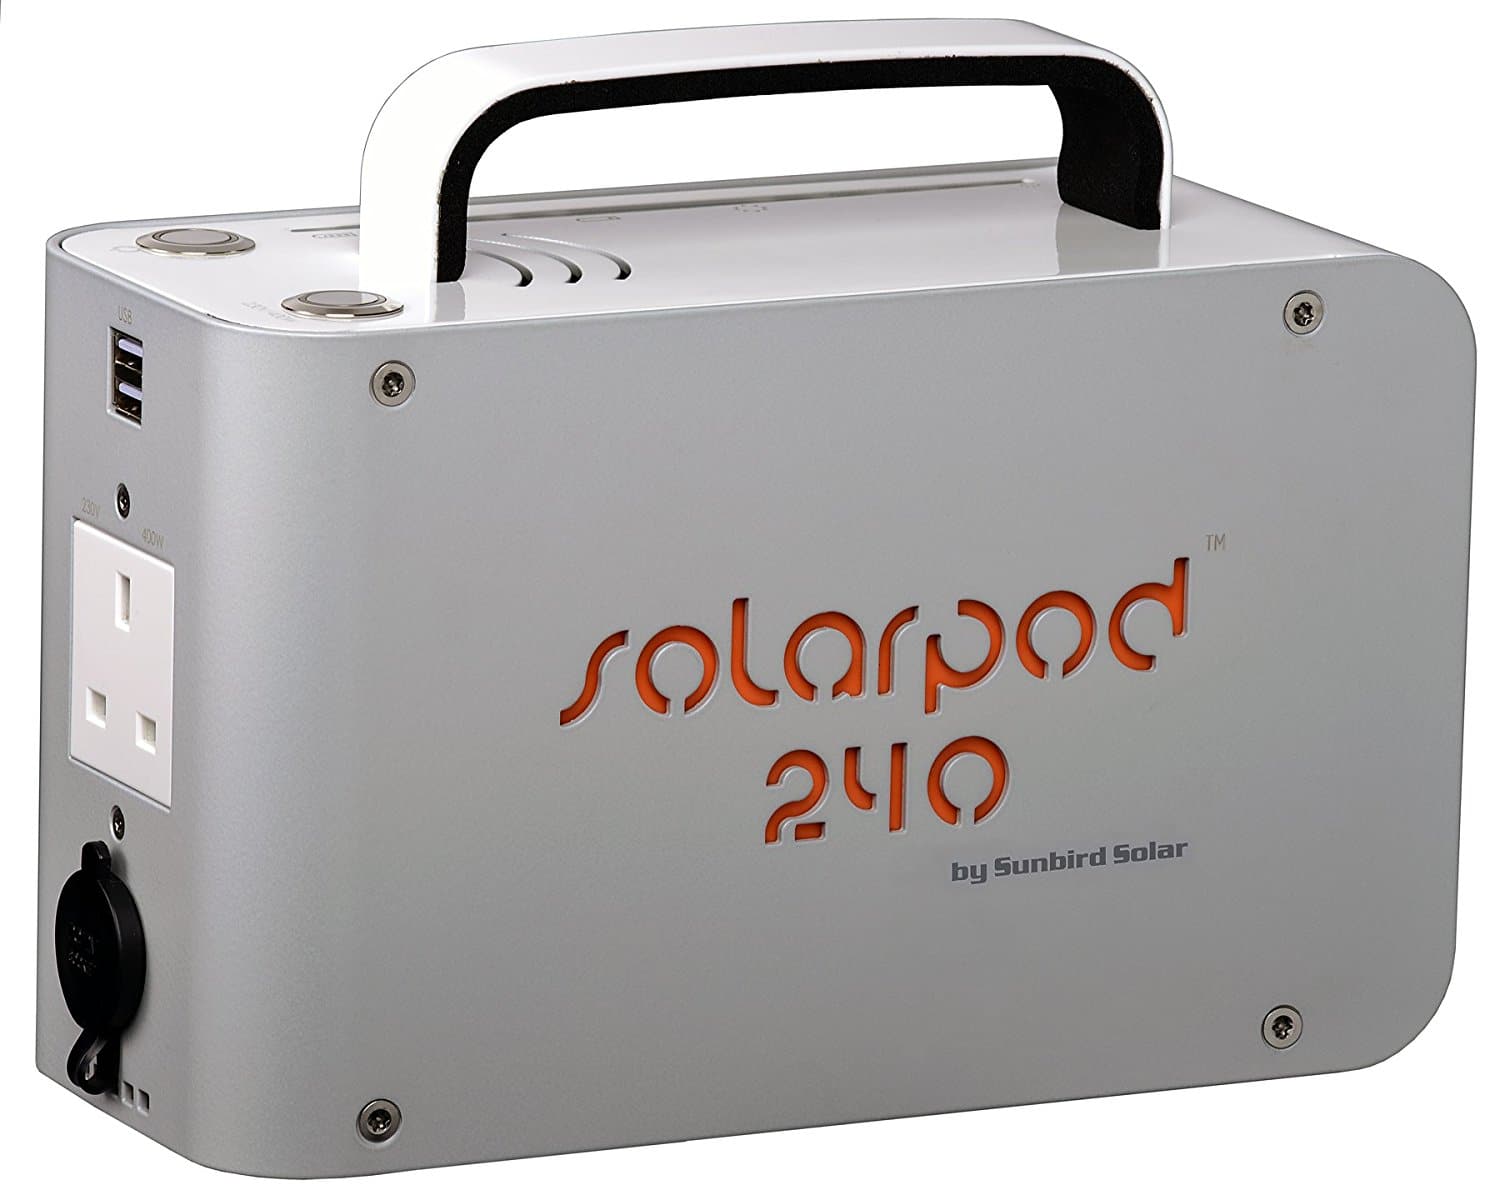 solarpod 240 solar generator